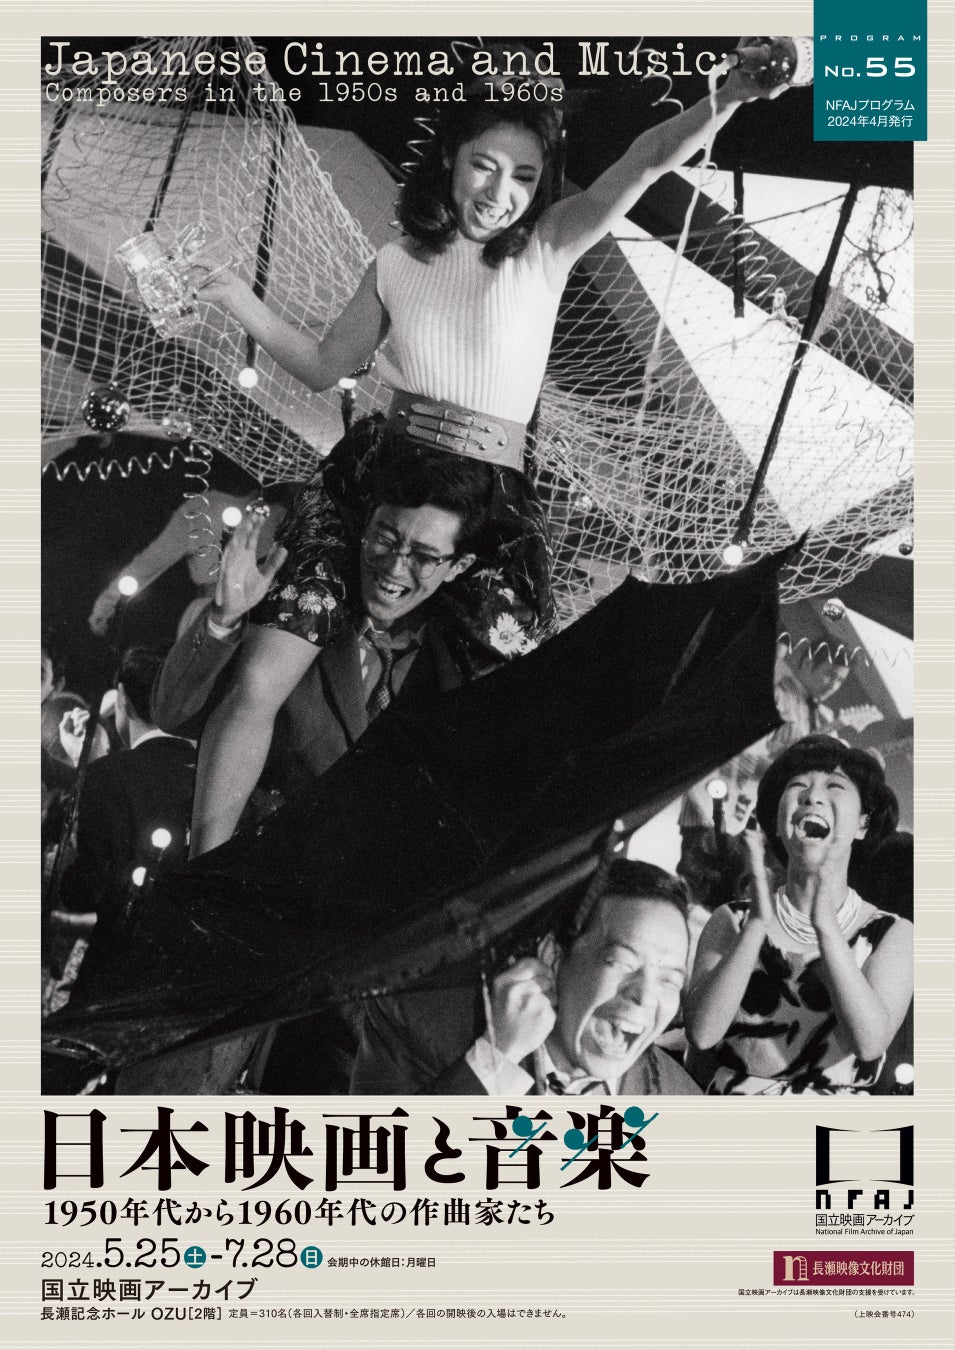 【国立映画アーカイブ】上映企画「日本映画と音楽 1950年代から1960年代の作曲家たち」開催のお知らせ